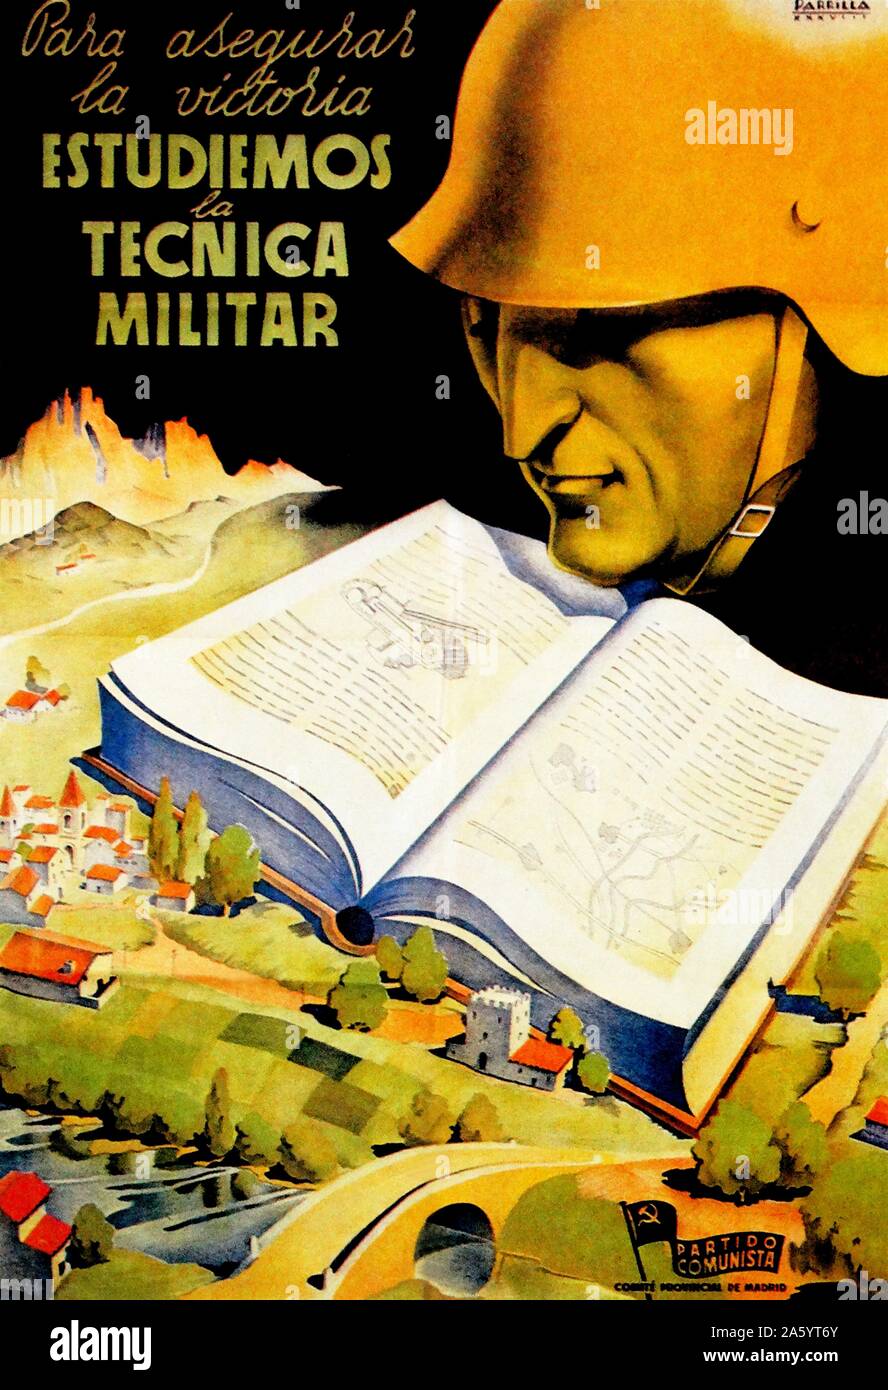 Spanischen Bürgerkrieg, kommunistische Propaganda-Plakat "Para Asegurar la Victoria Estudiemos la Tecnia Militar" (wir untersuchen militärische Technik um Sieg zu gewährleisten) Stockfoto